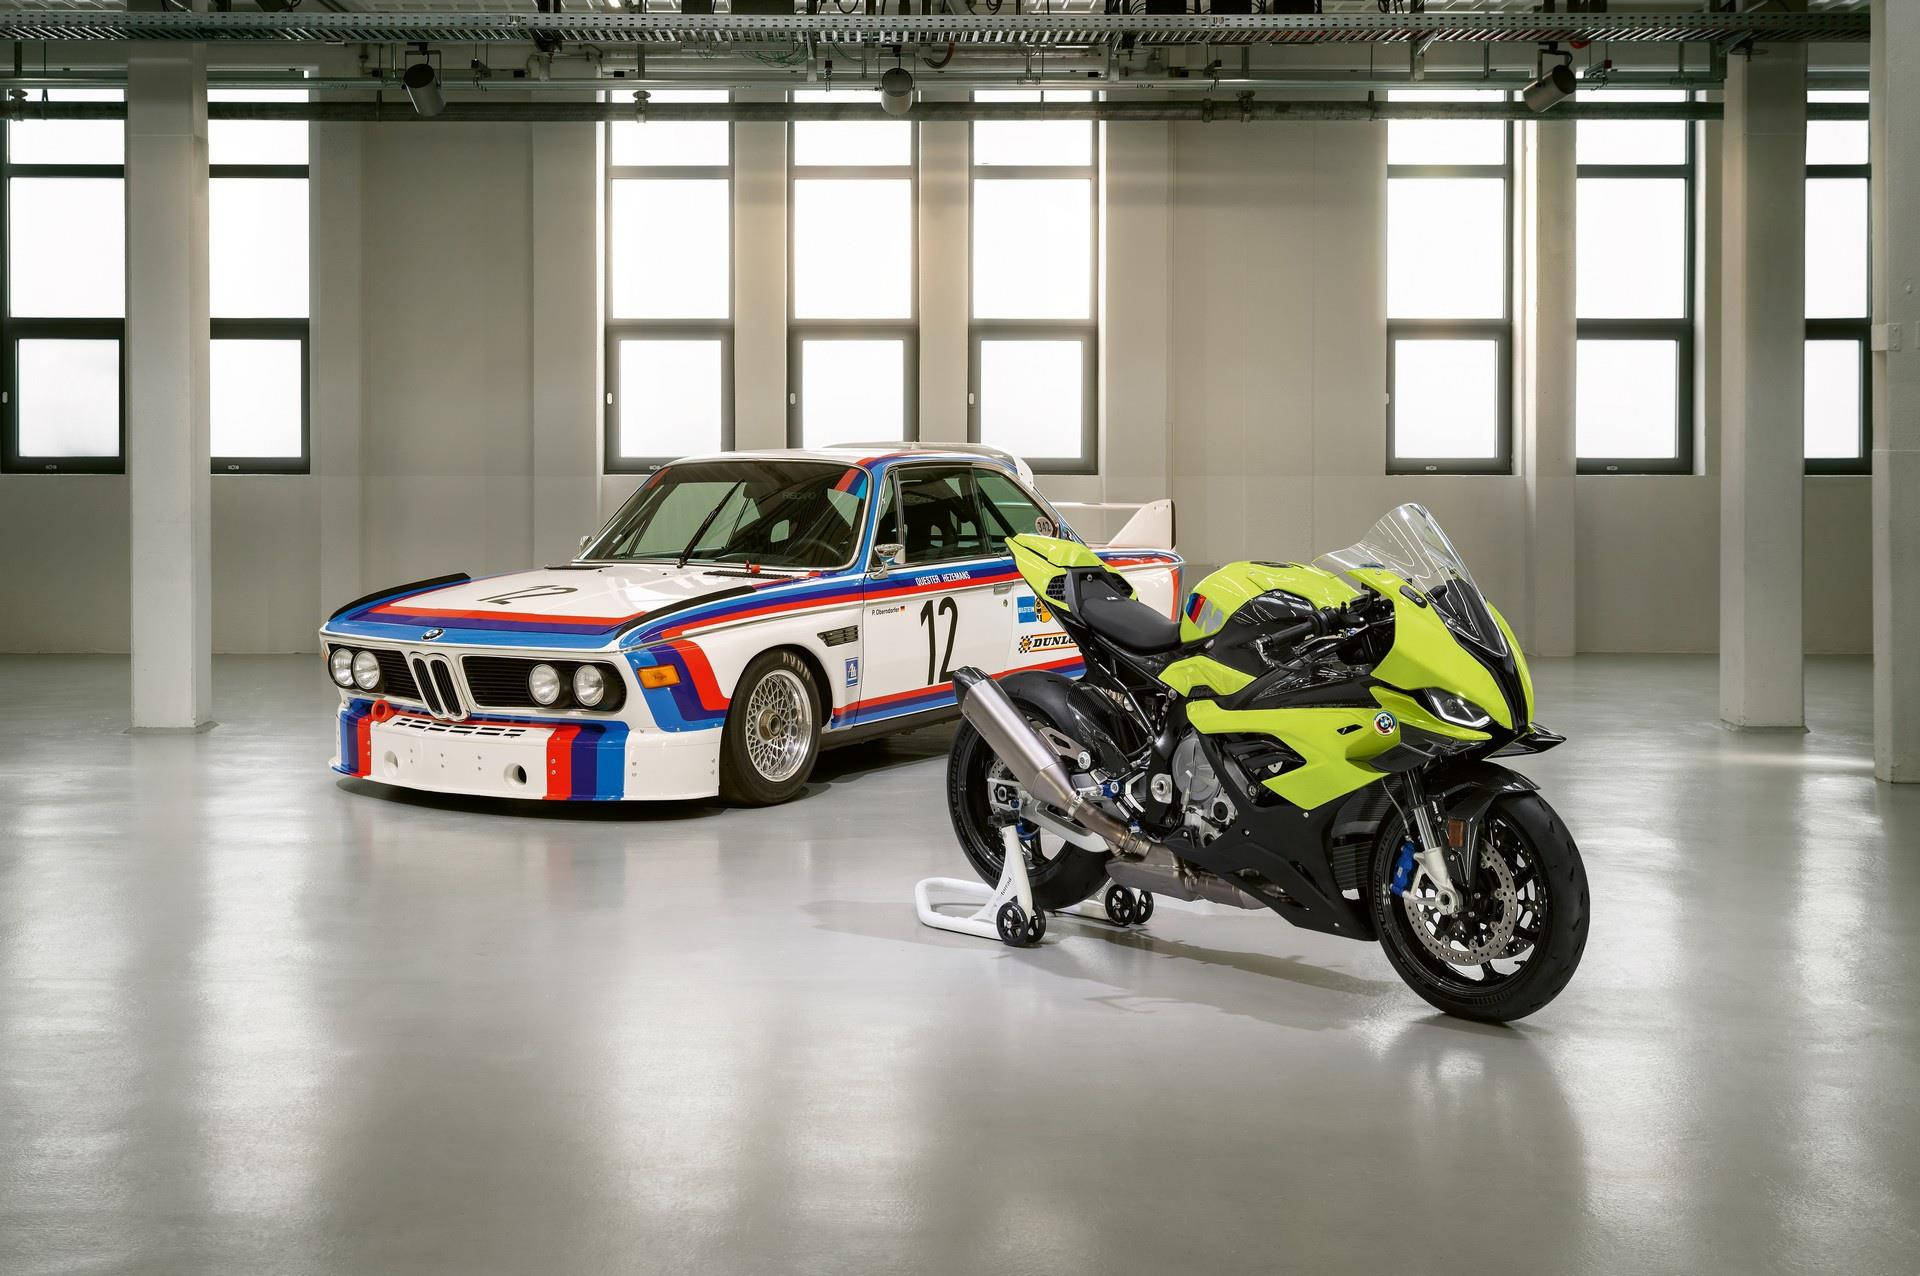 BMW M 1000 RR phiên bản kỷ niệm 50 năm được ra mắt - 3